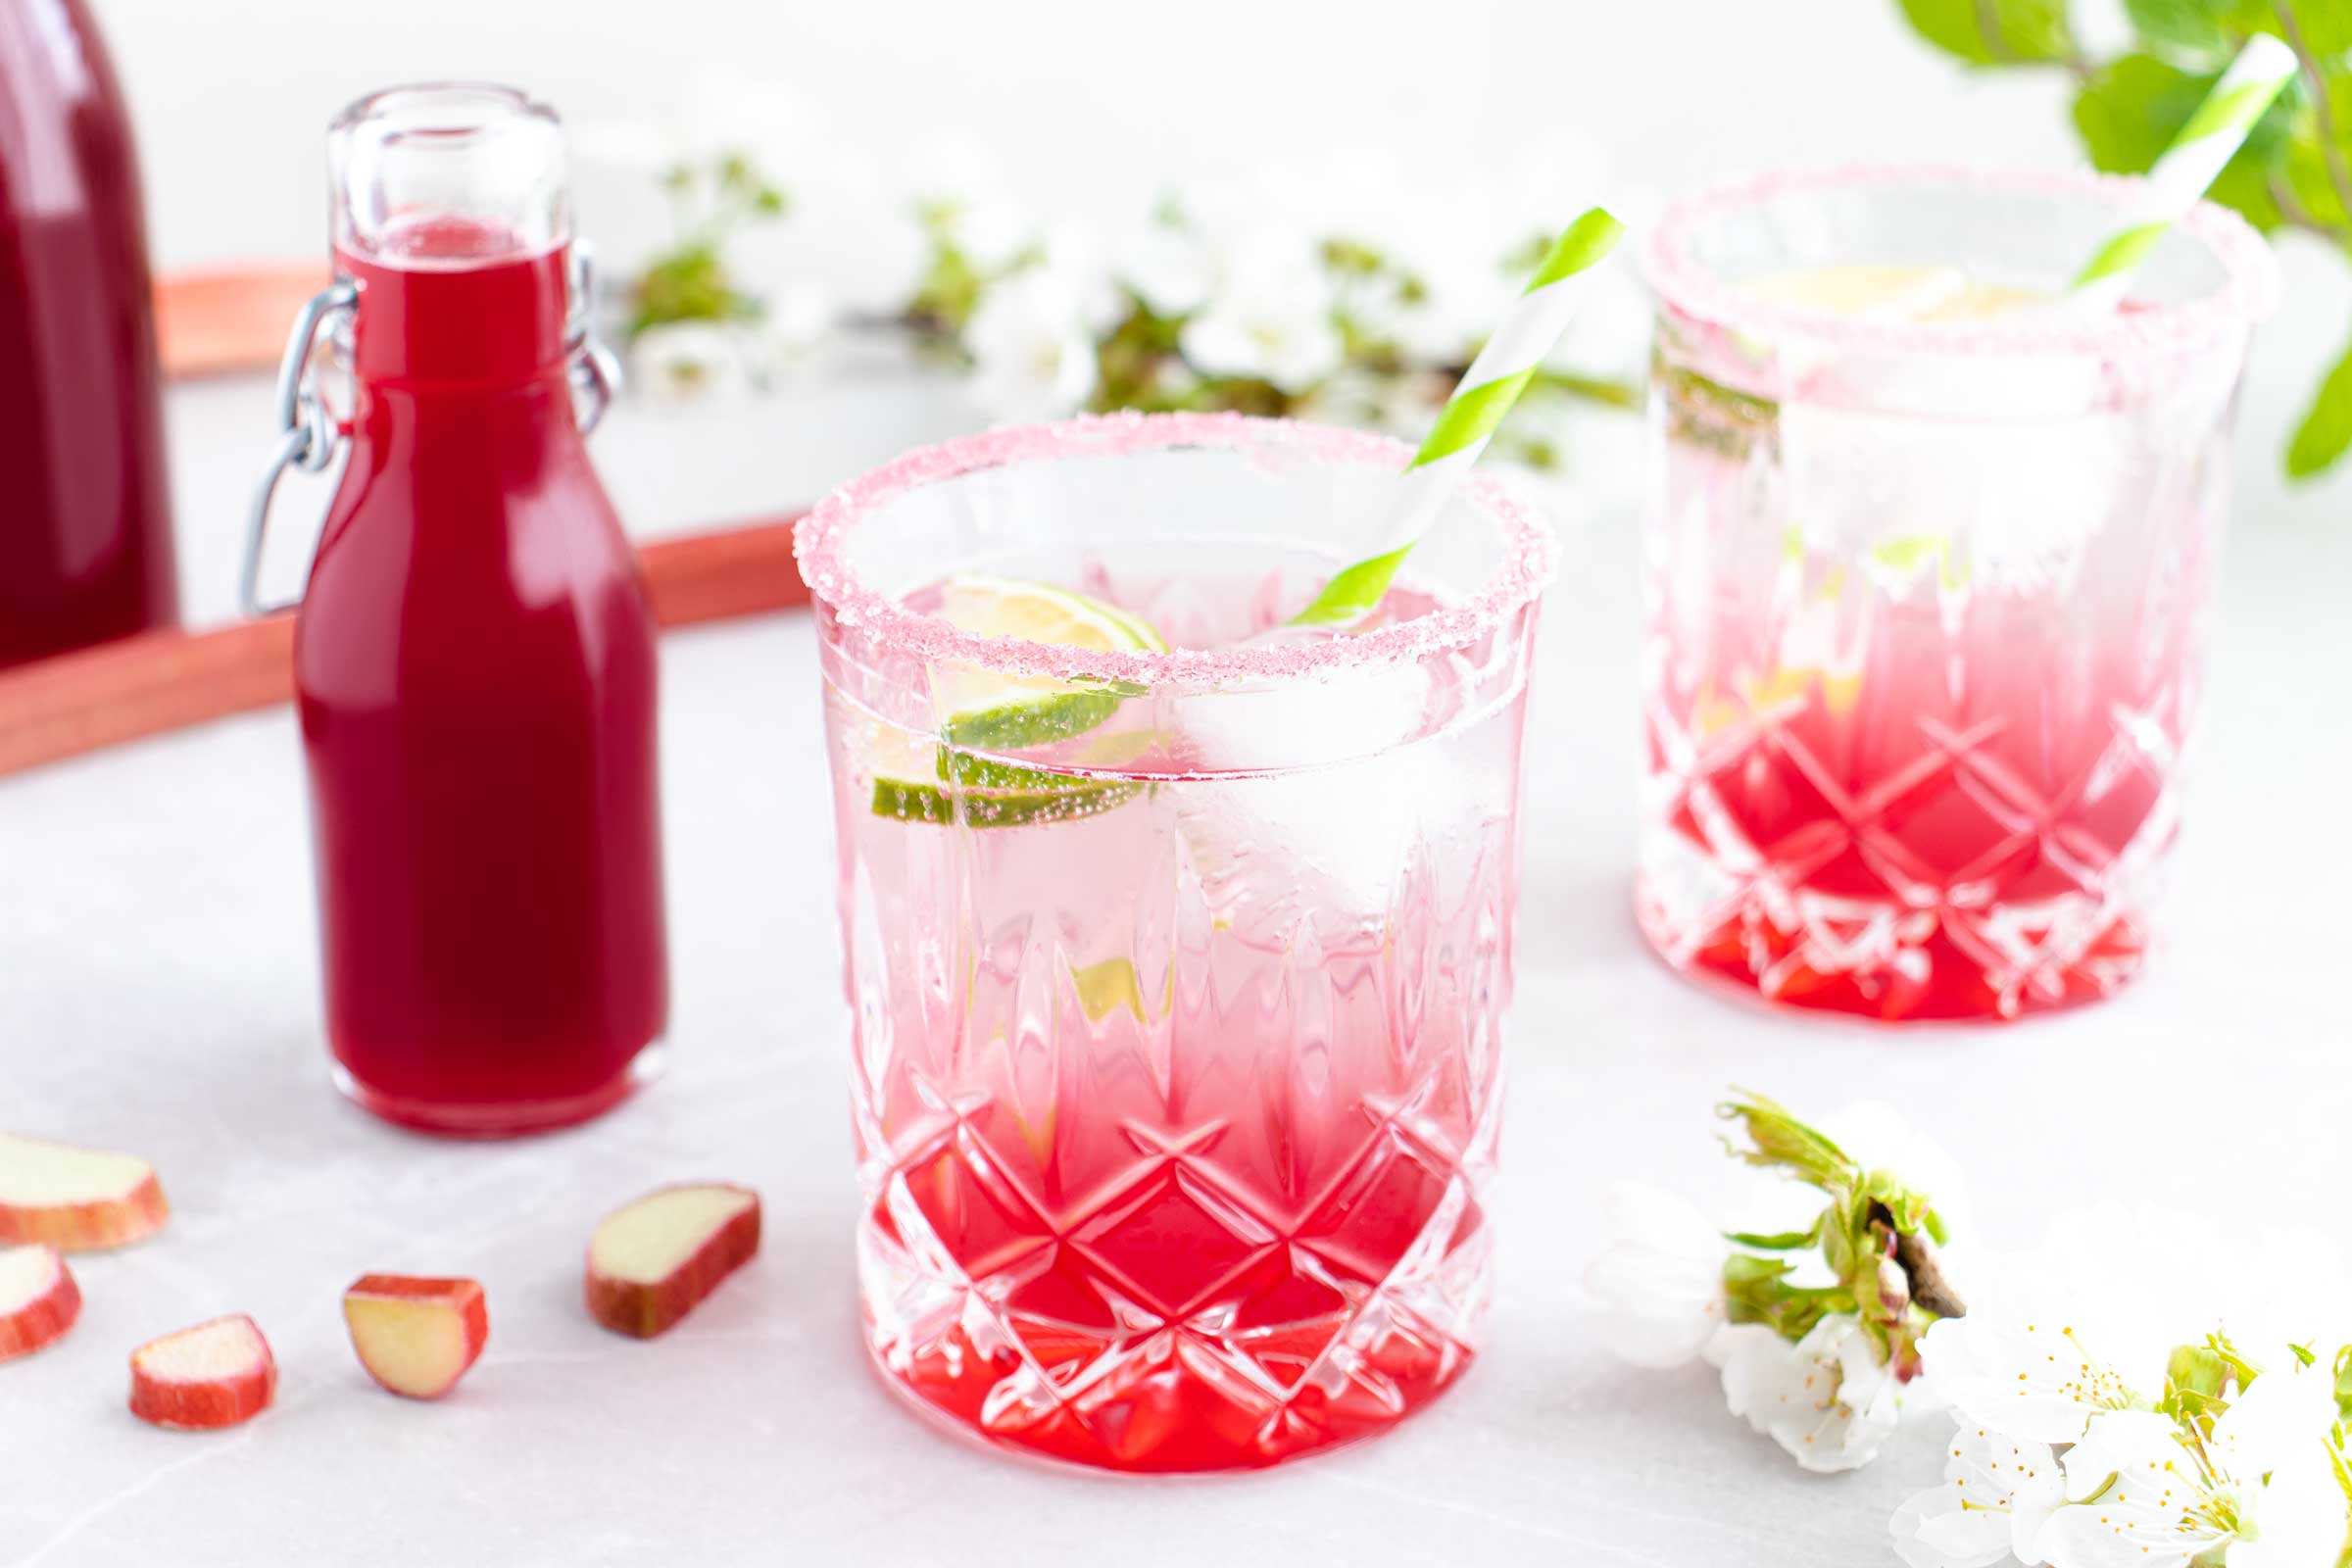 Zwei Gläser gefüllt mit einem erfrischenden Sommergetränk mit selbstgemachten Rhabarbersirup stehen auf einem weißen Tisch. Im Hintergrund stehen zwei Flaschen des roten Rhabarbersirups.